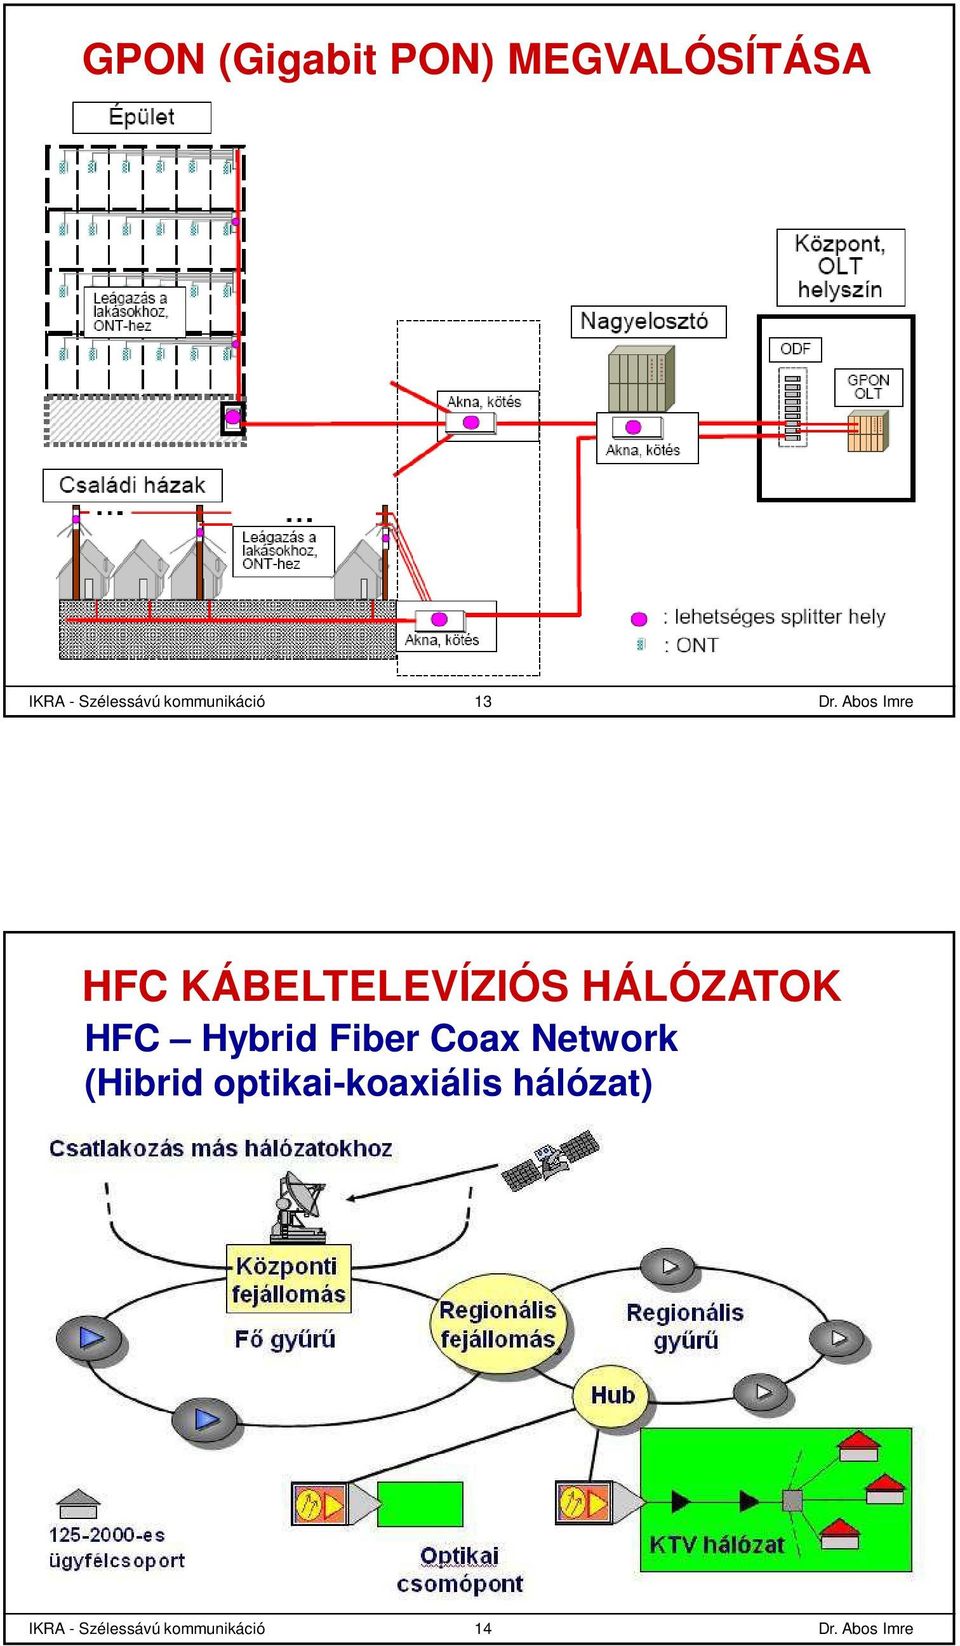 HÁLÓZATOK HFC Hybrid Fiber Coax Network (Hibrid